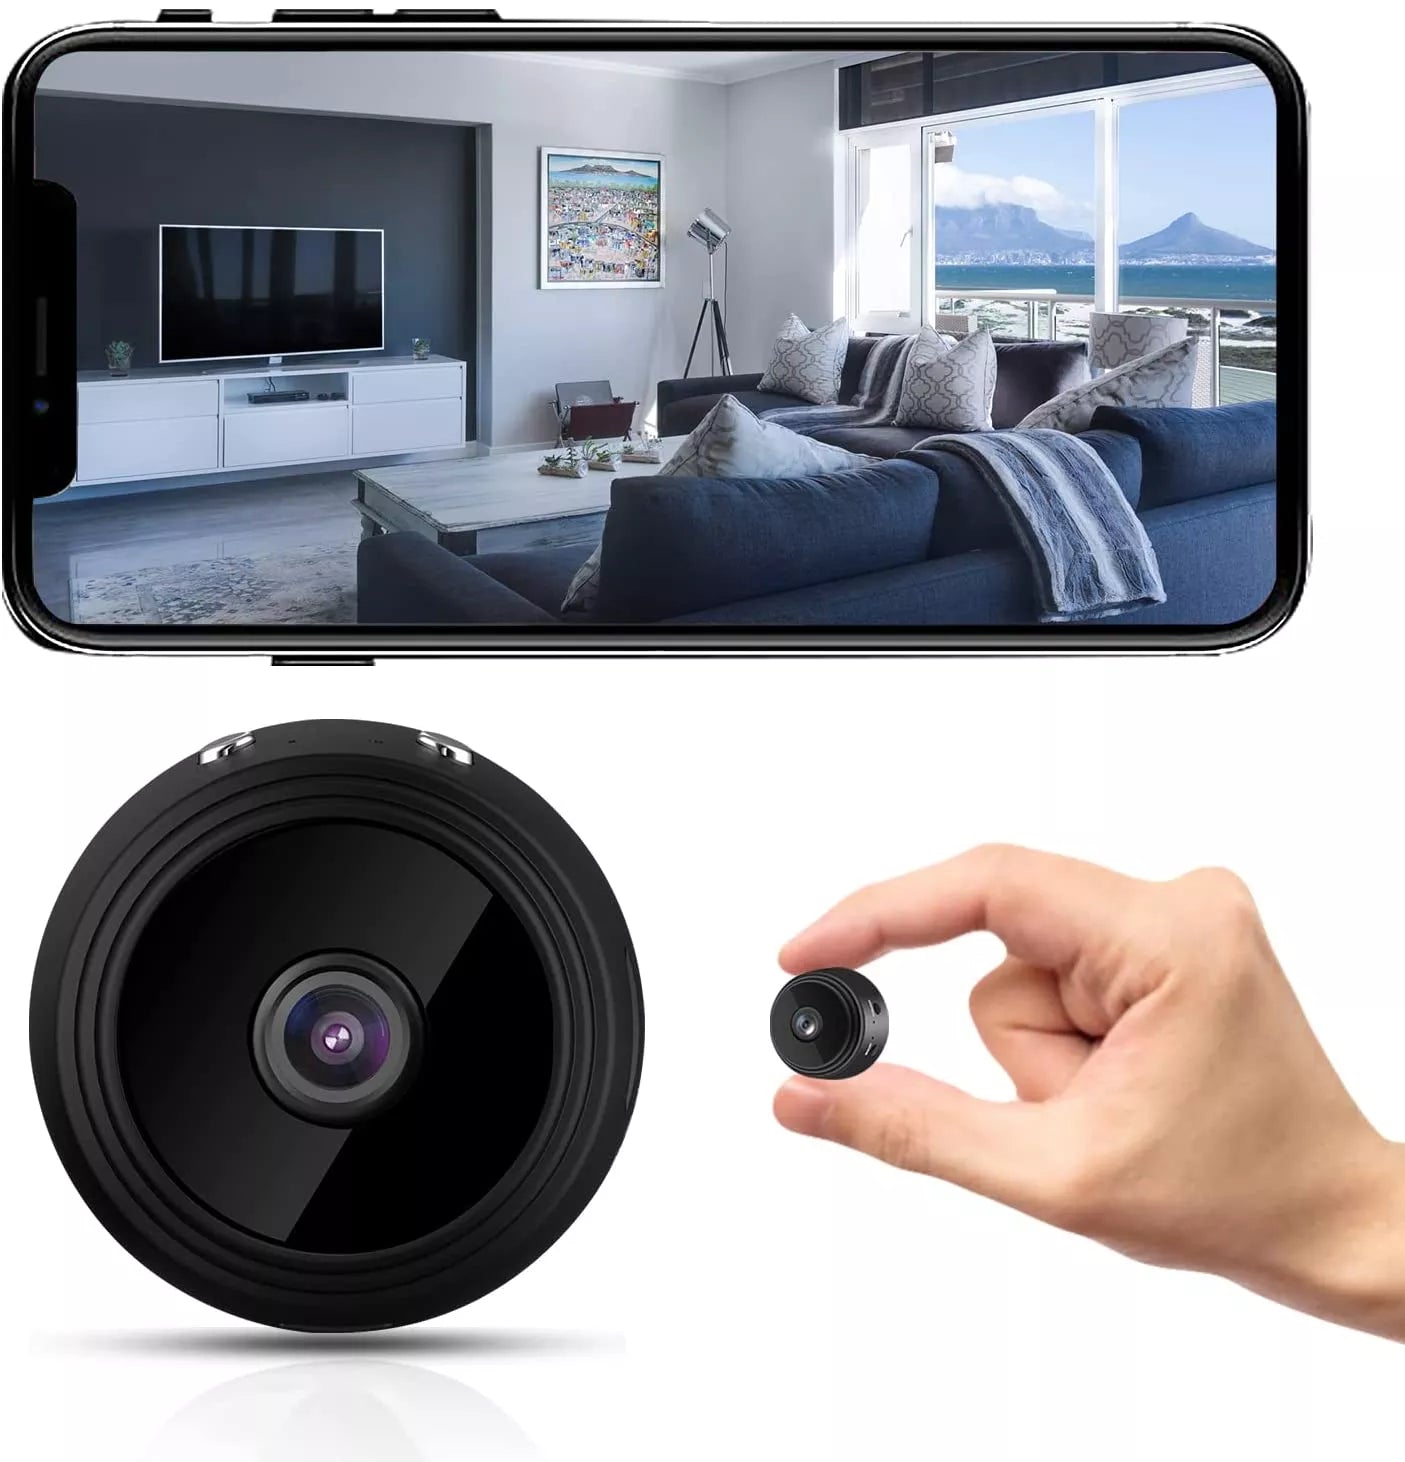 Caméra surveillance sans fil Wifi avec APP 1080P HD avec haut